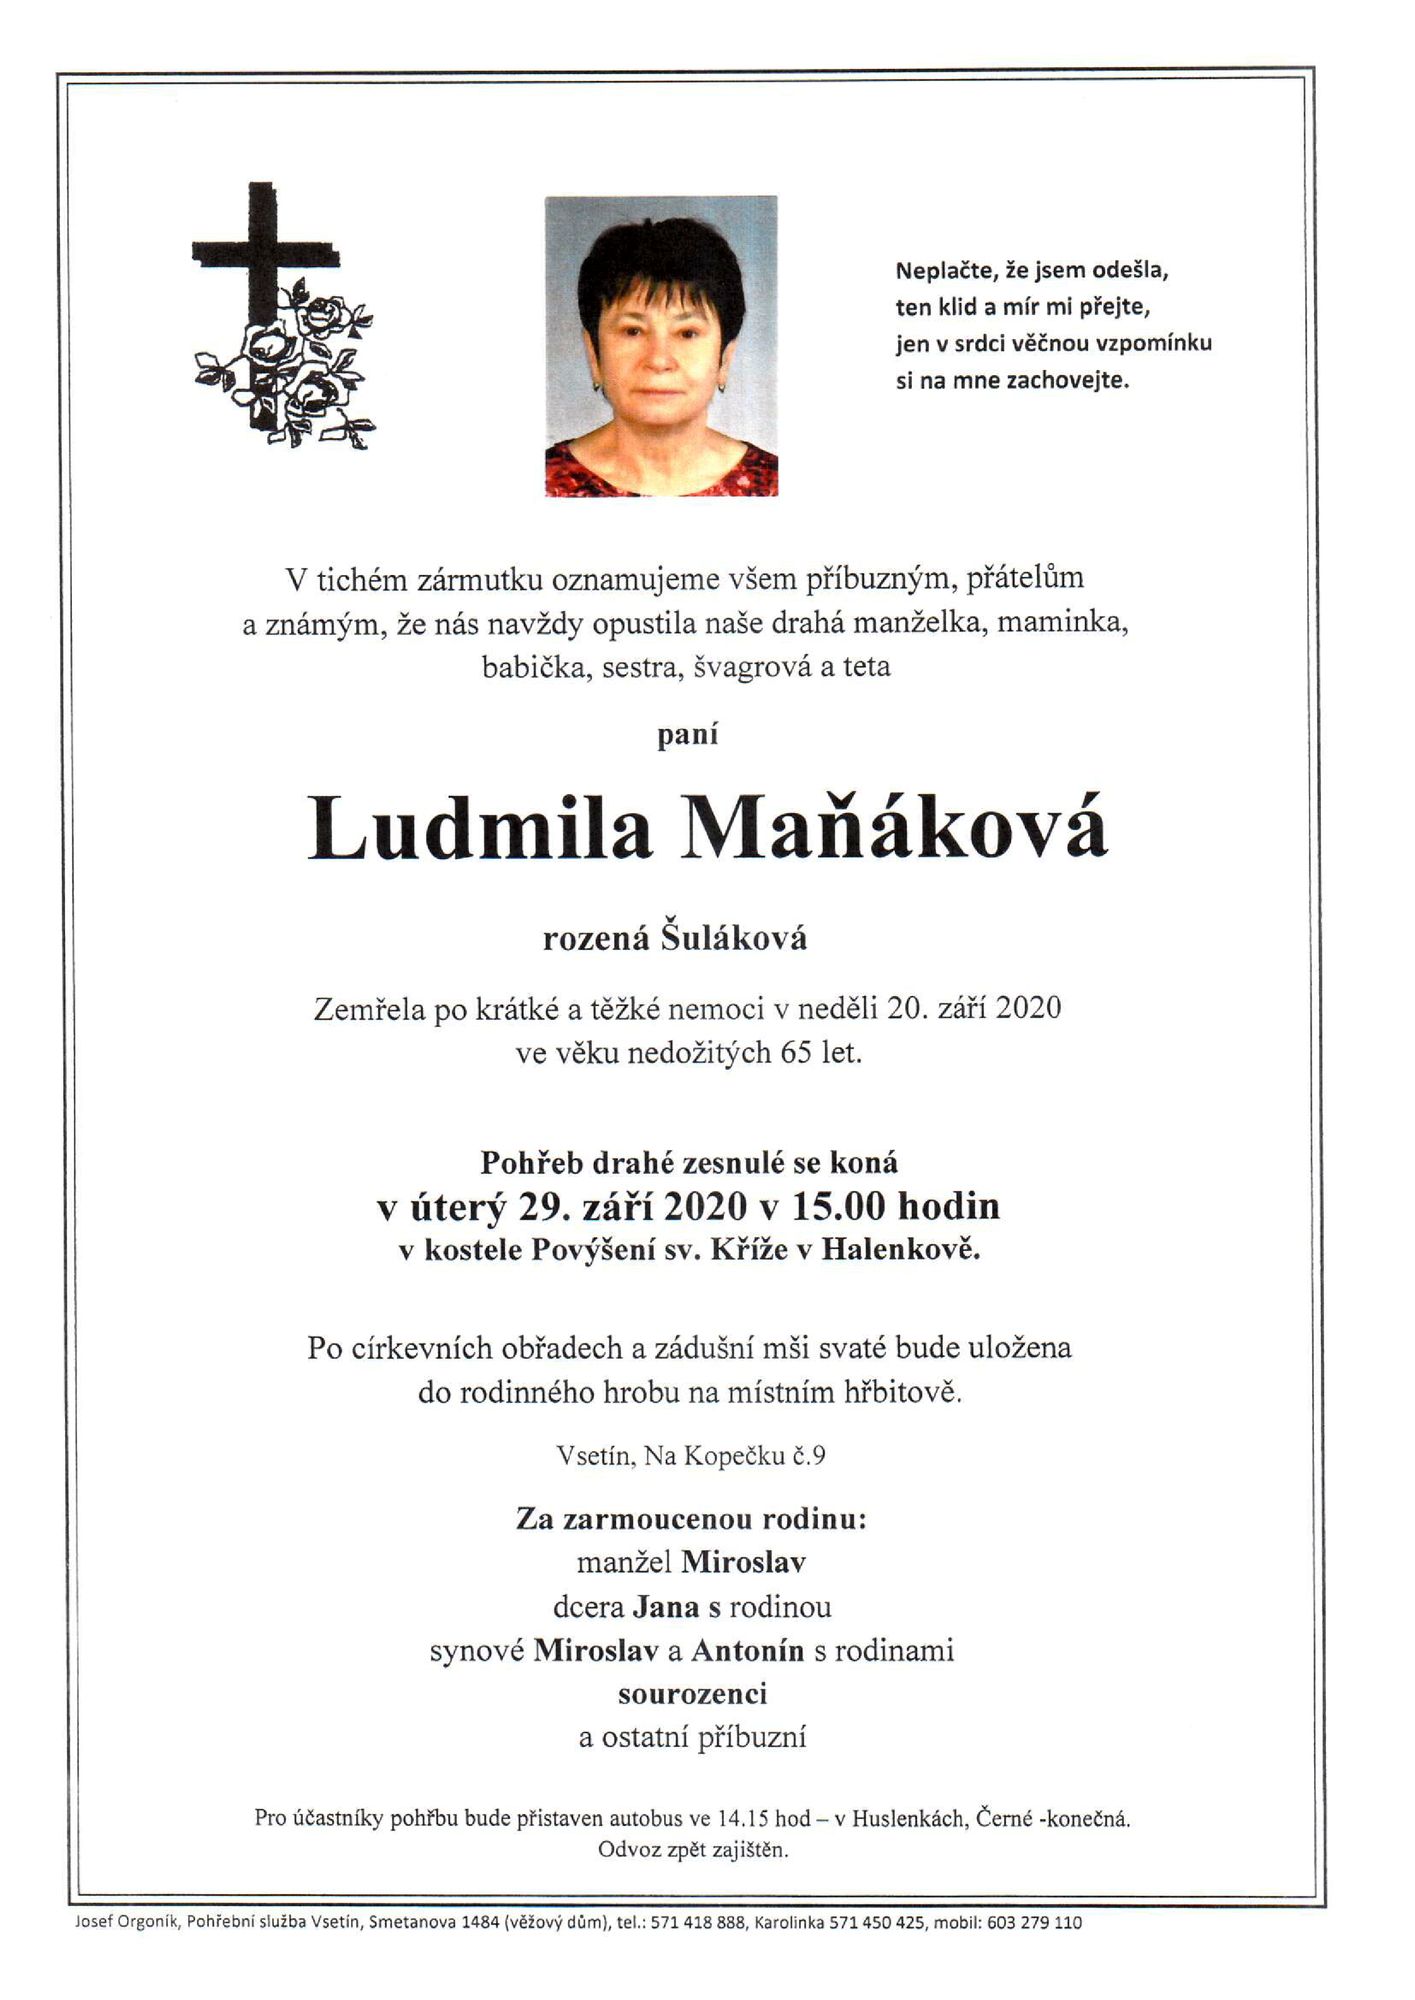 Ludmila Maňáková